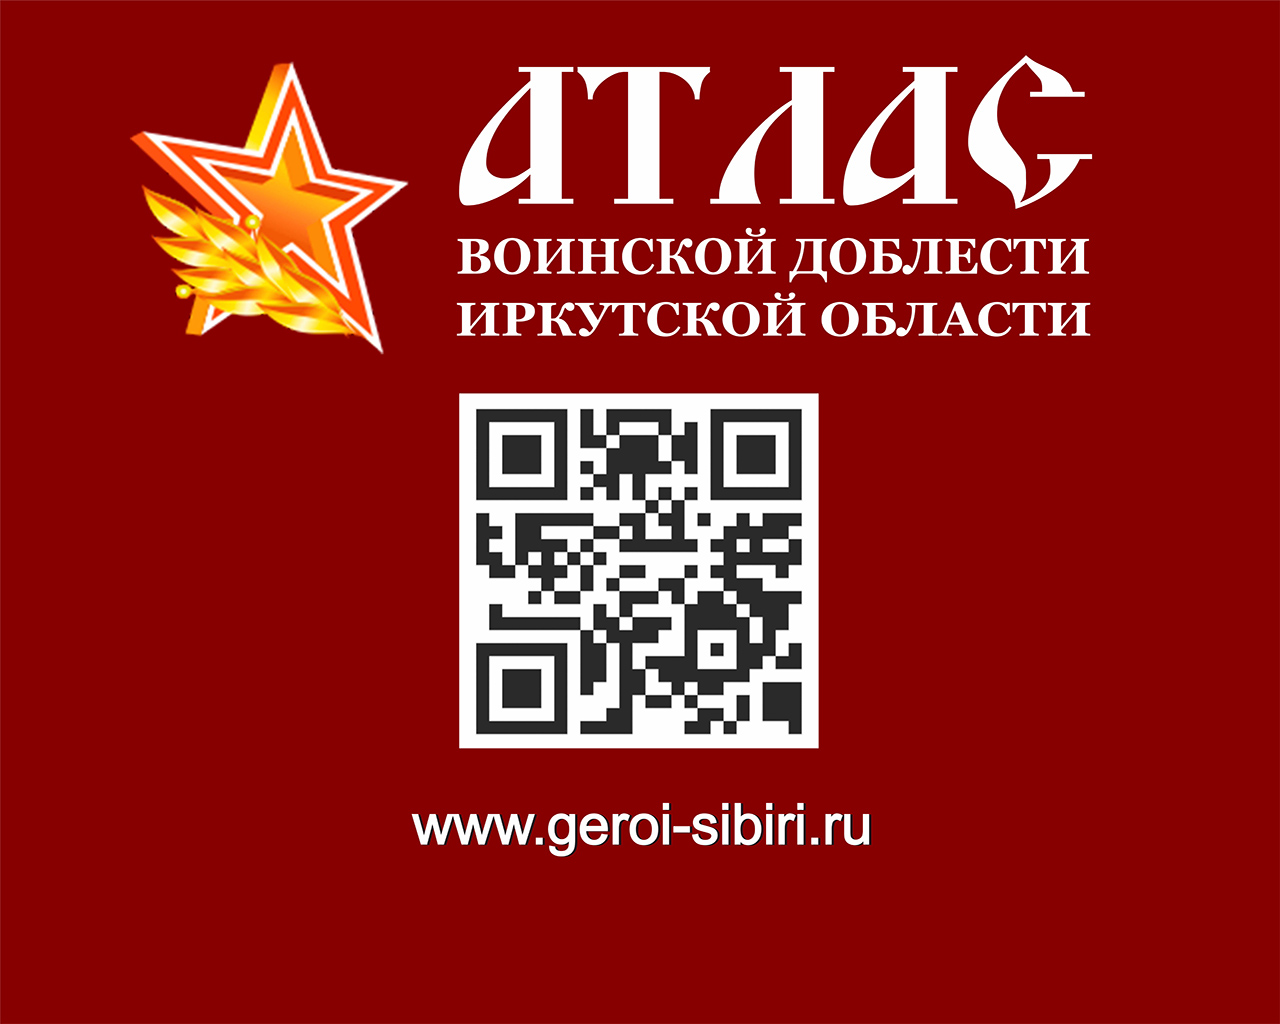 Социальный проект «Атлас воинской доблести Иркутской области»